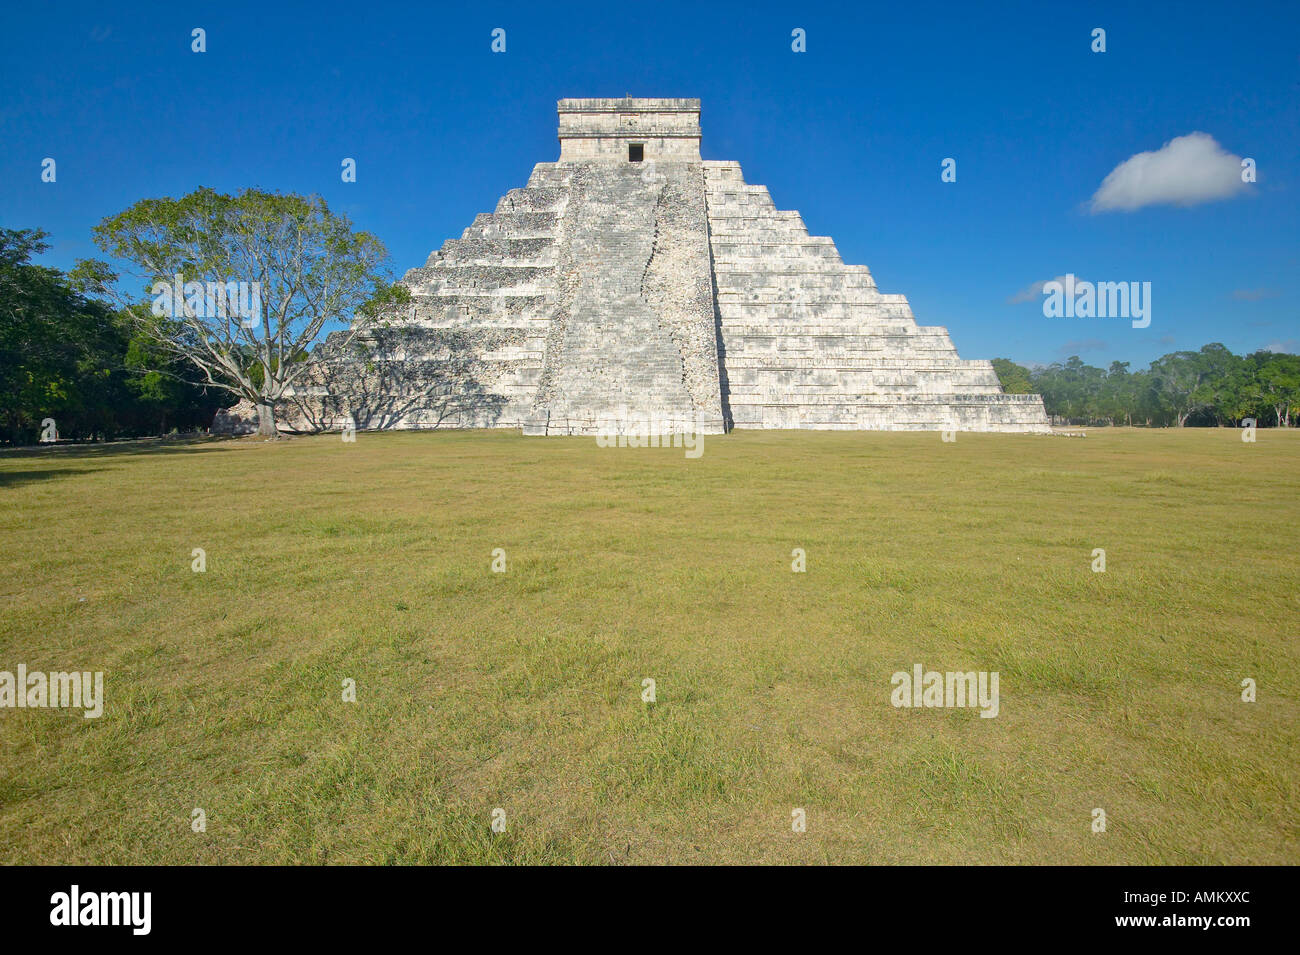 La pyramide Maya de Kukulkan également connu sous le nom d'El Castillo et ruines de Chichen Itza Yucatan Mexique Banque D'Images